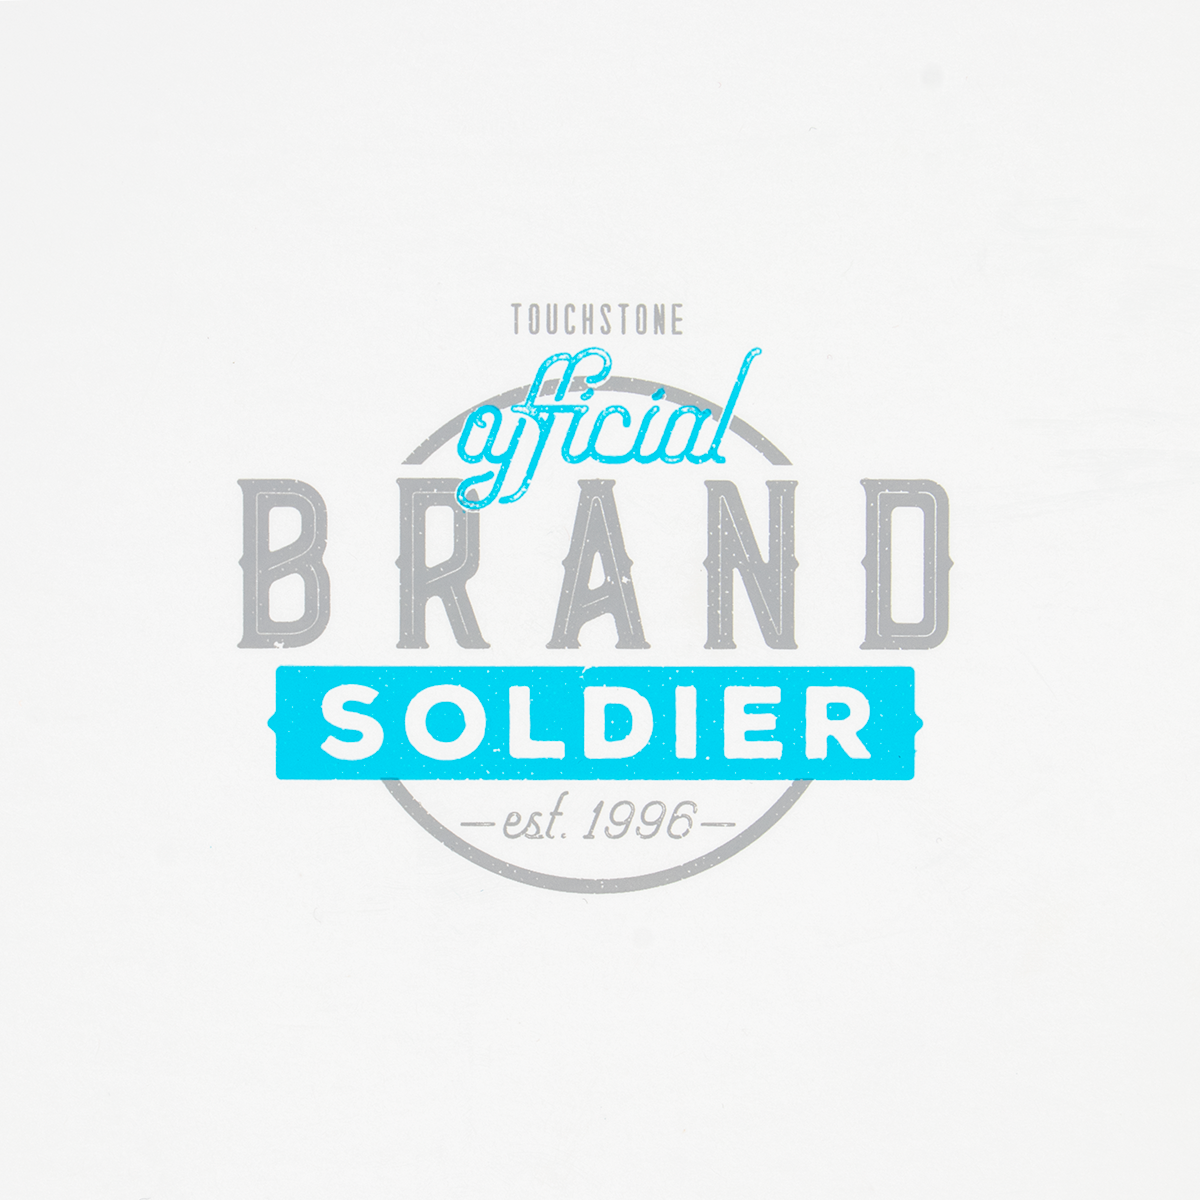 Brand Soldier Notebook